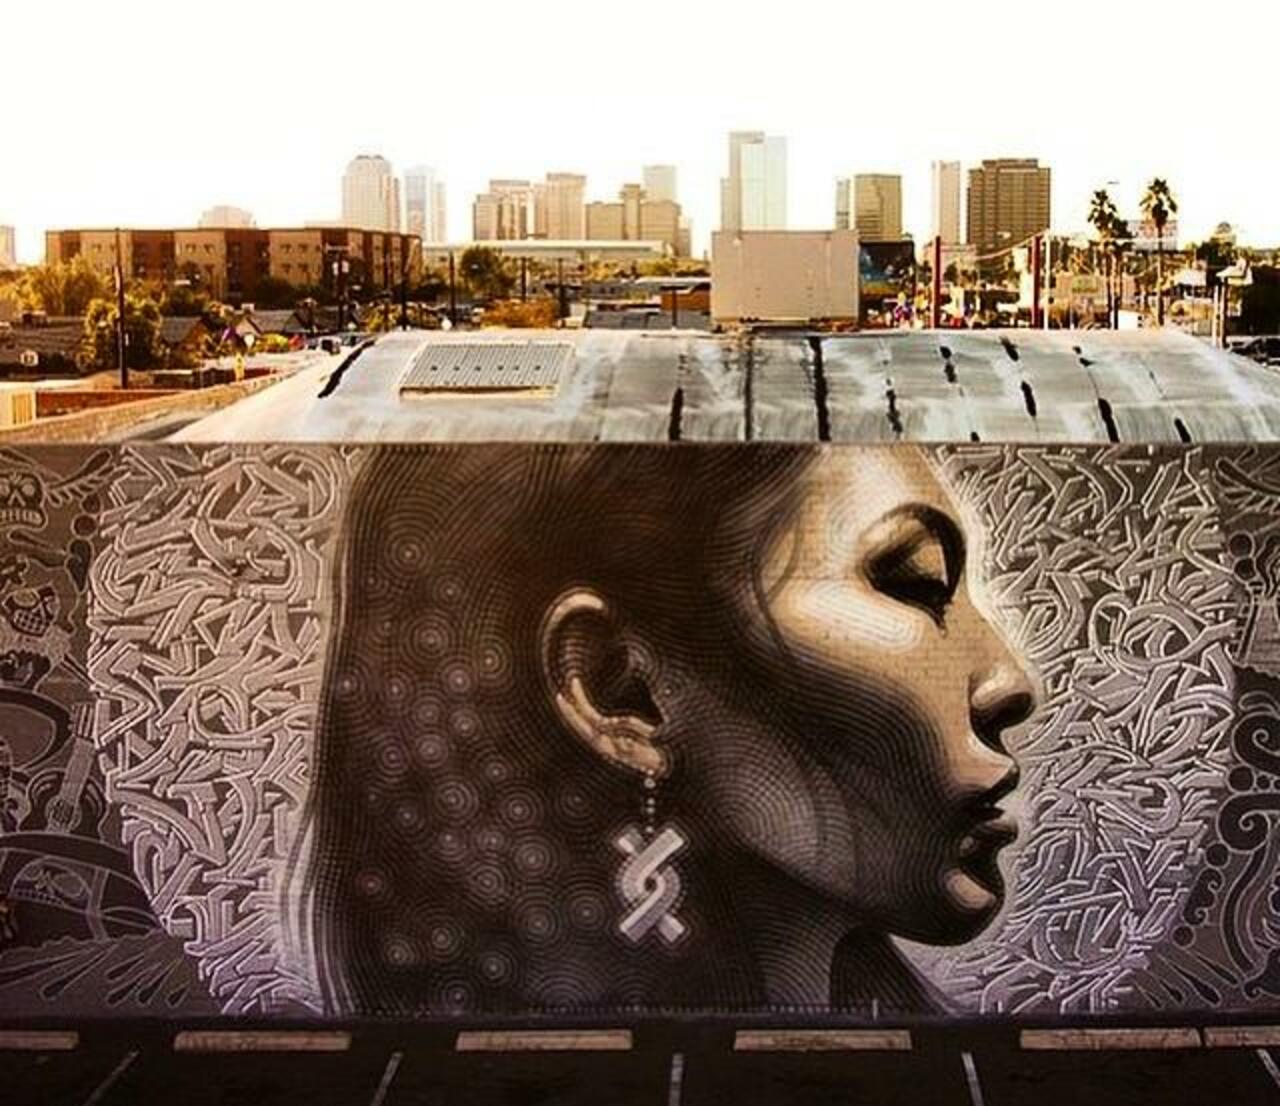 "@GoogleStreetArt: Latest Street Art work by El Mac in Phoenix, Arizona

#art #mural #graffiti #streetart http://t.co/3v7UaKI1r2"⭐